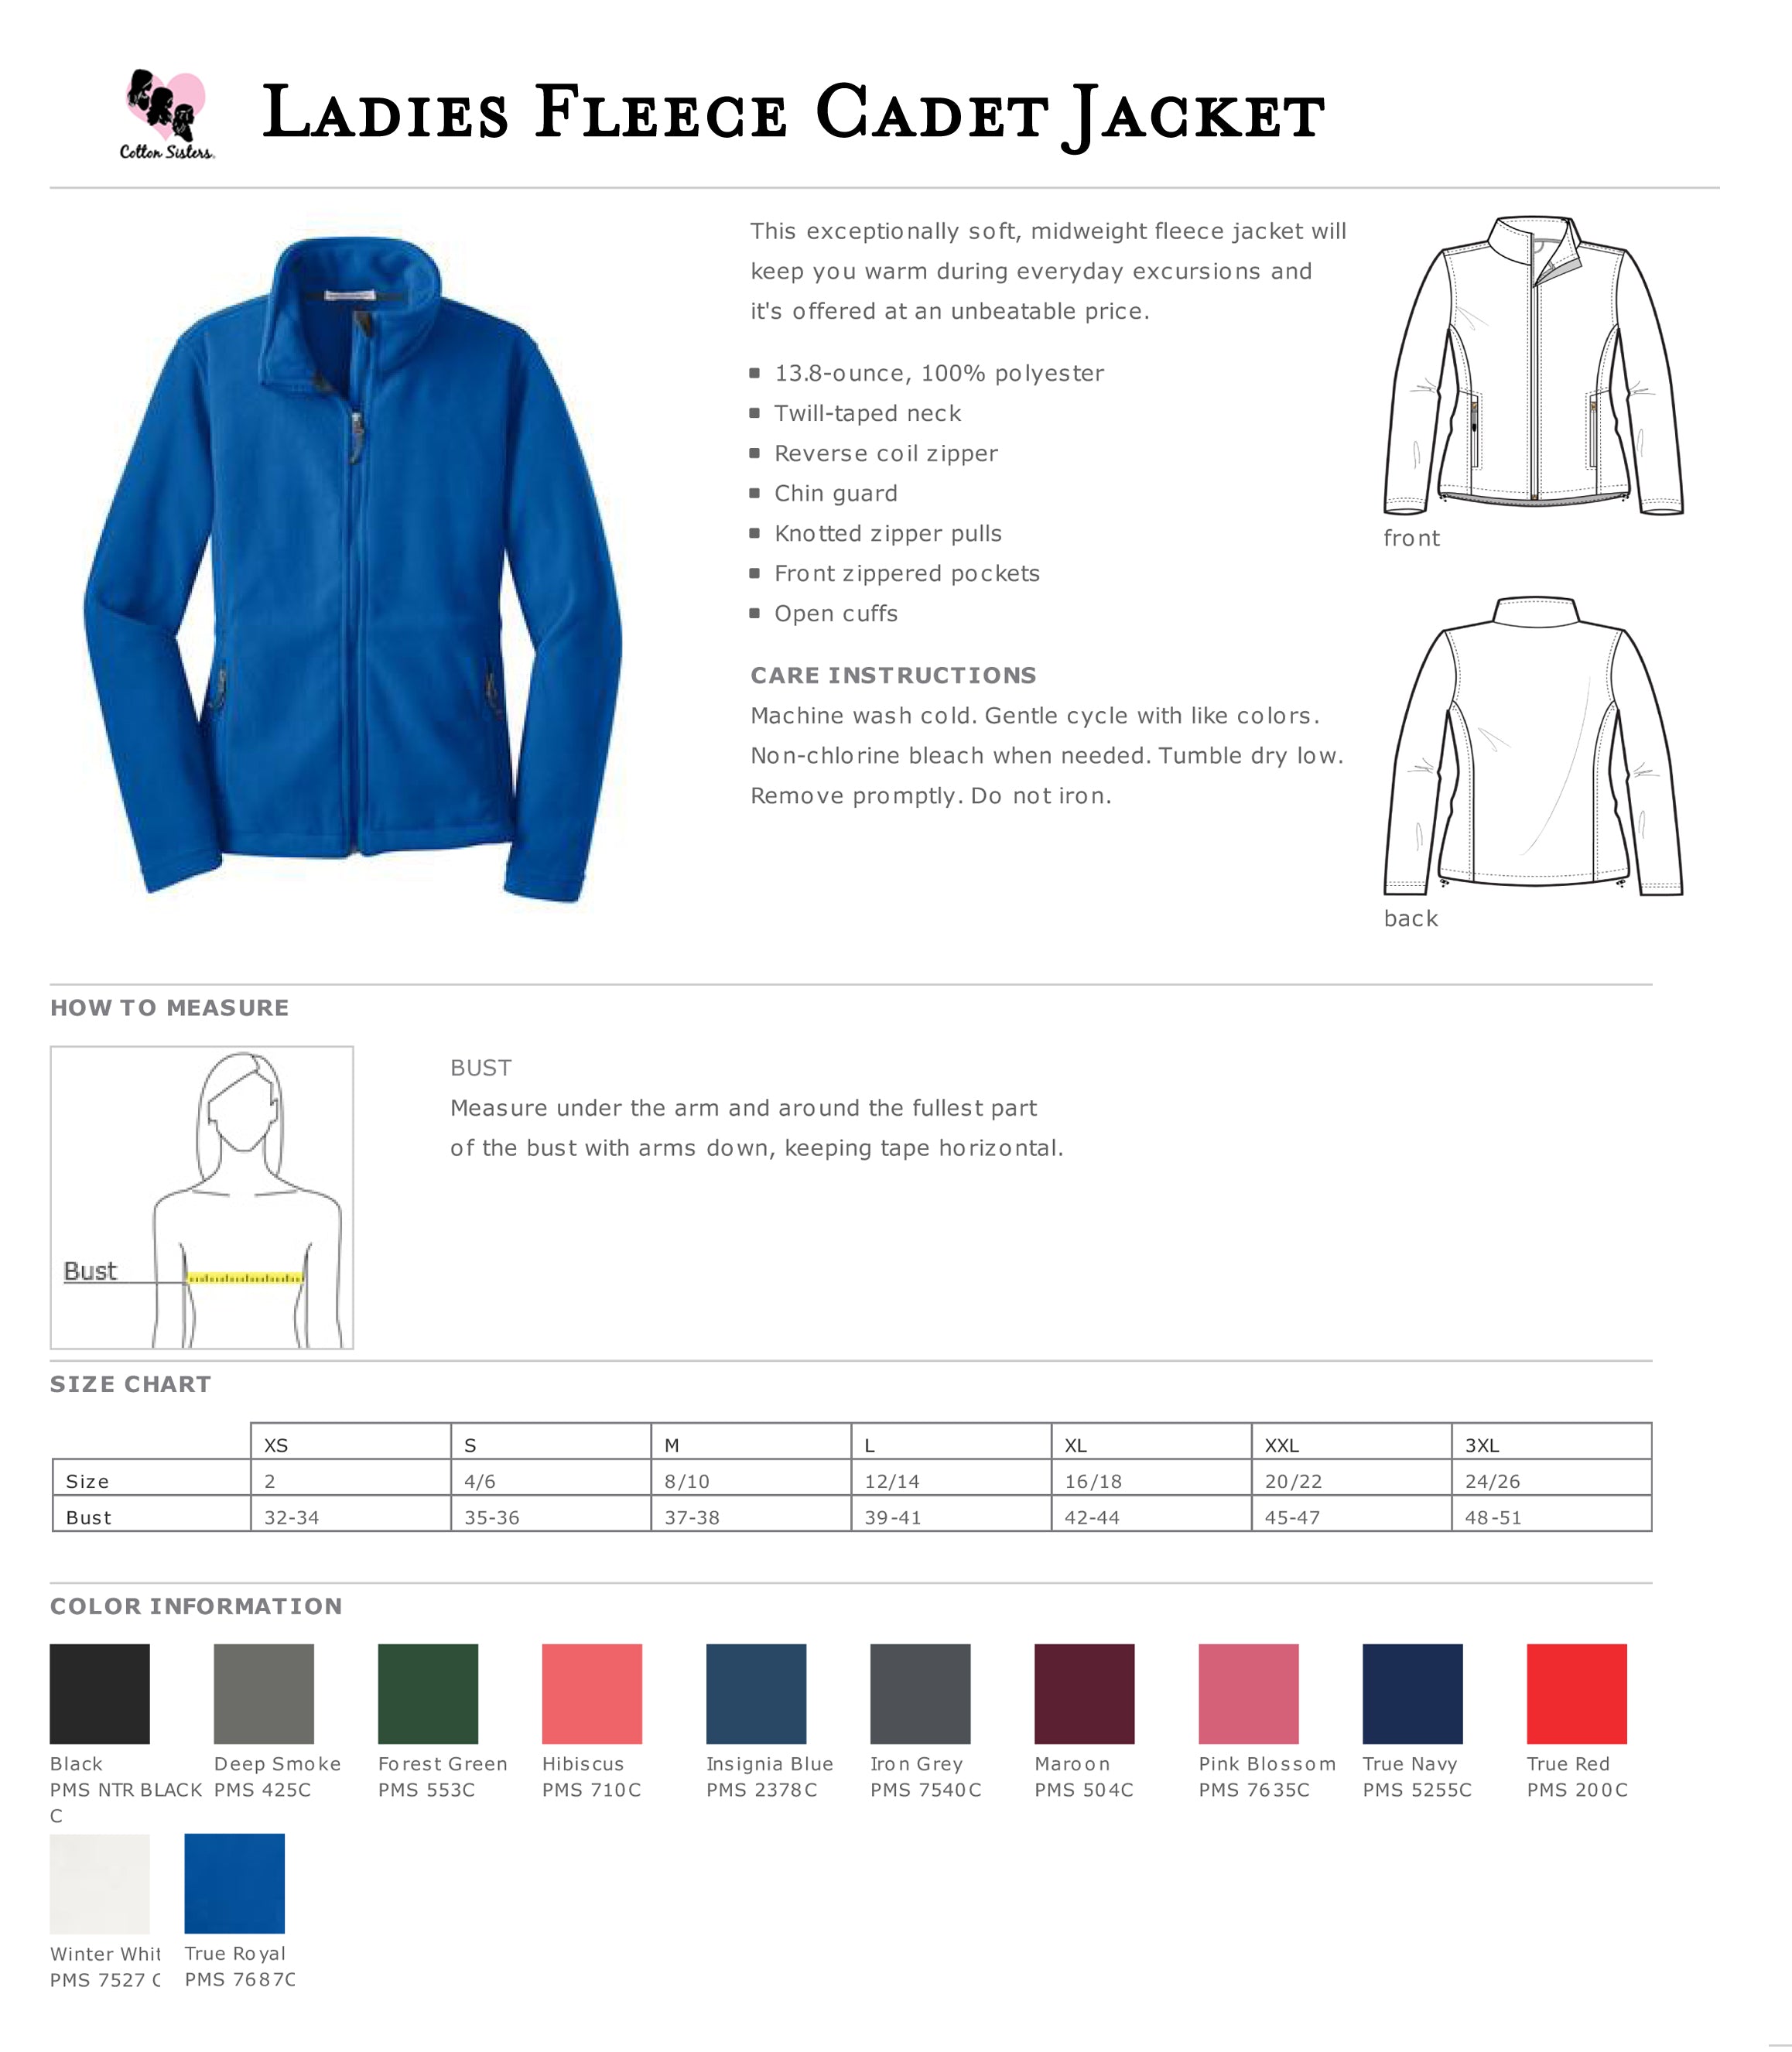 Ladies Monogrammed Fleece Jacket - Personalized Full Zip Cadet